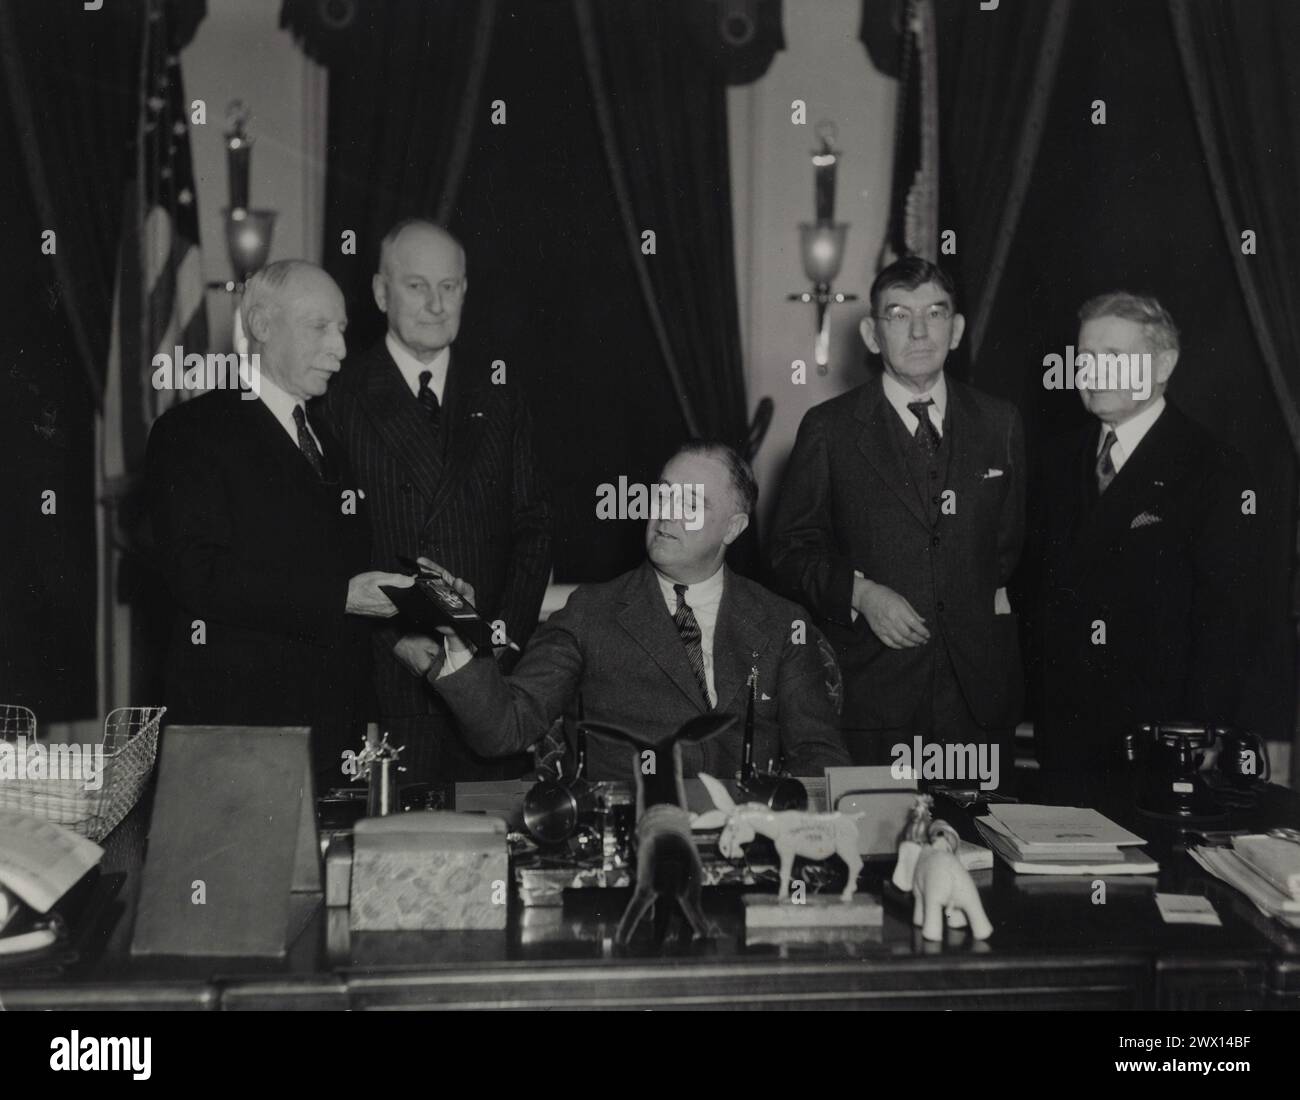 Le président Franklin Roosevelt, remet des médailles aux officiers de deuxième division. De gauche à droite, Major Gen. Omar Bundy, Major Gen. J.G. Harbord, Pres. F. Roosevelt, Major Gen. J.A. LeJeune, Major Gen. Paul Malone. Maison Blanche, Washington, DC CA. Janvier 1934 Banque D'Images